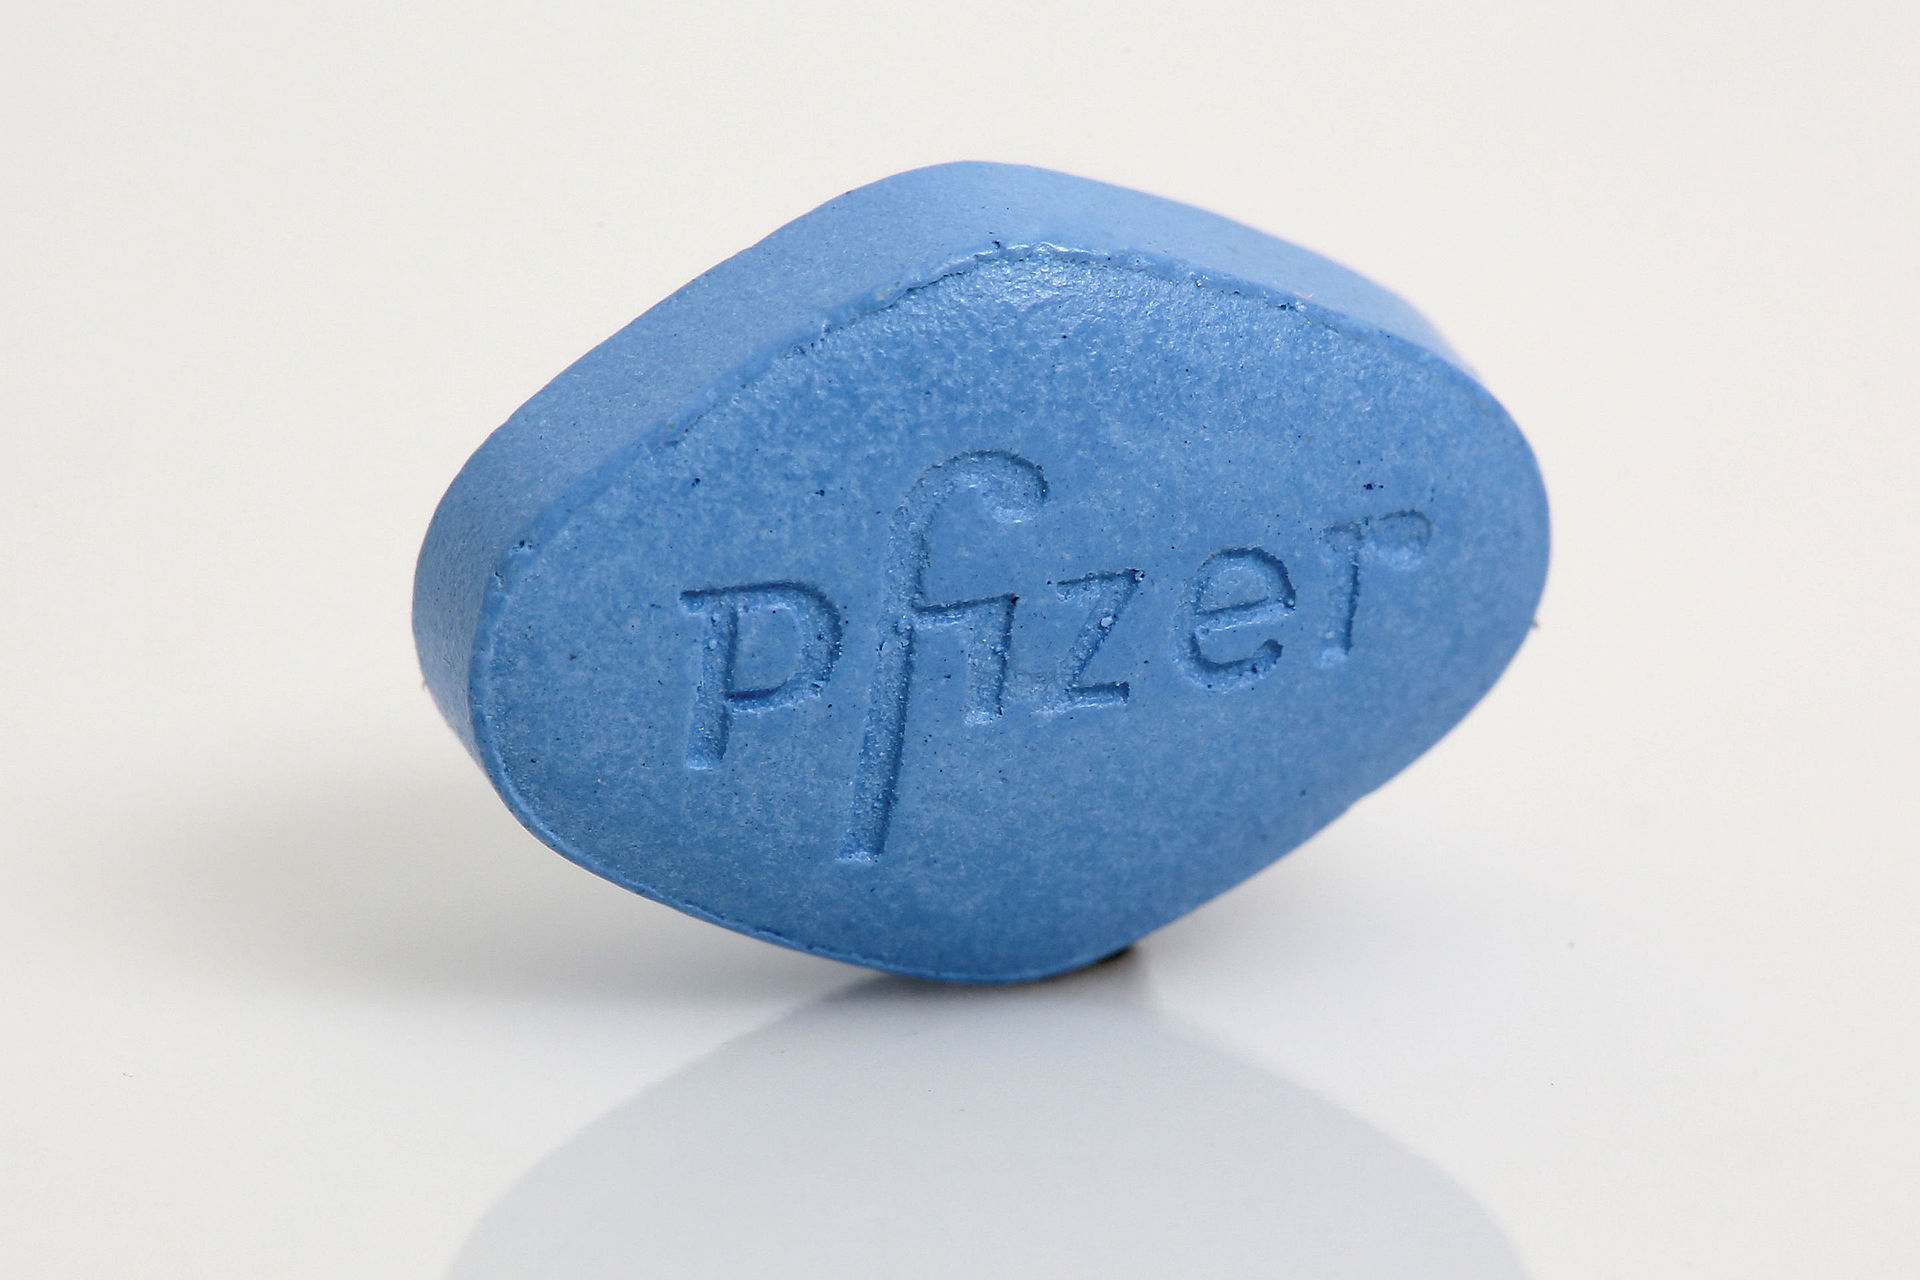 Die original blaue Pille – Viagra